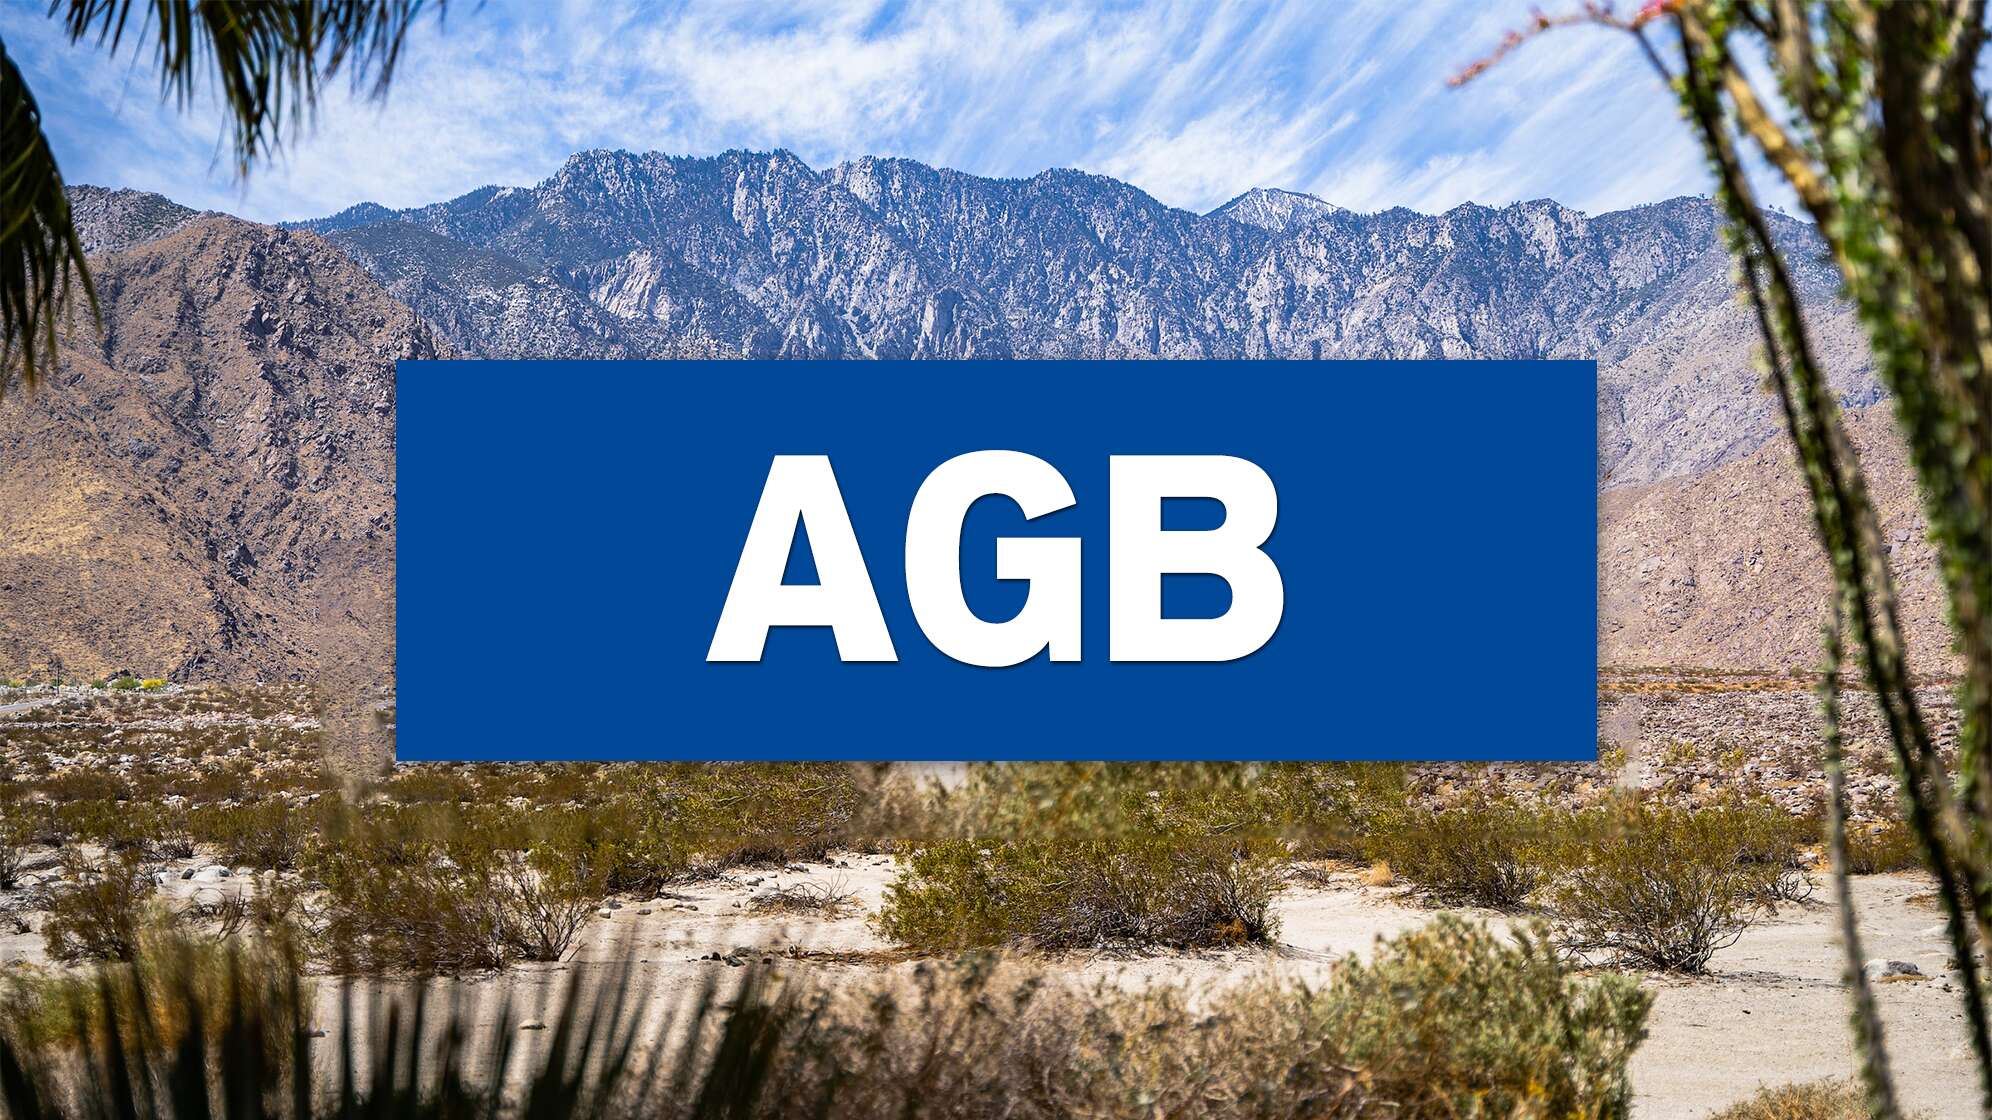 Ein Bild der Wüste im kalifornischen Coachella Valley mit Text: "AGB"